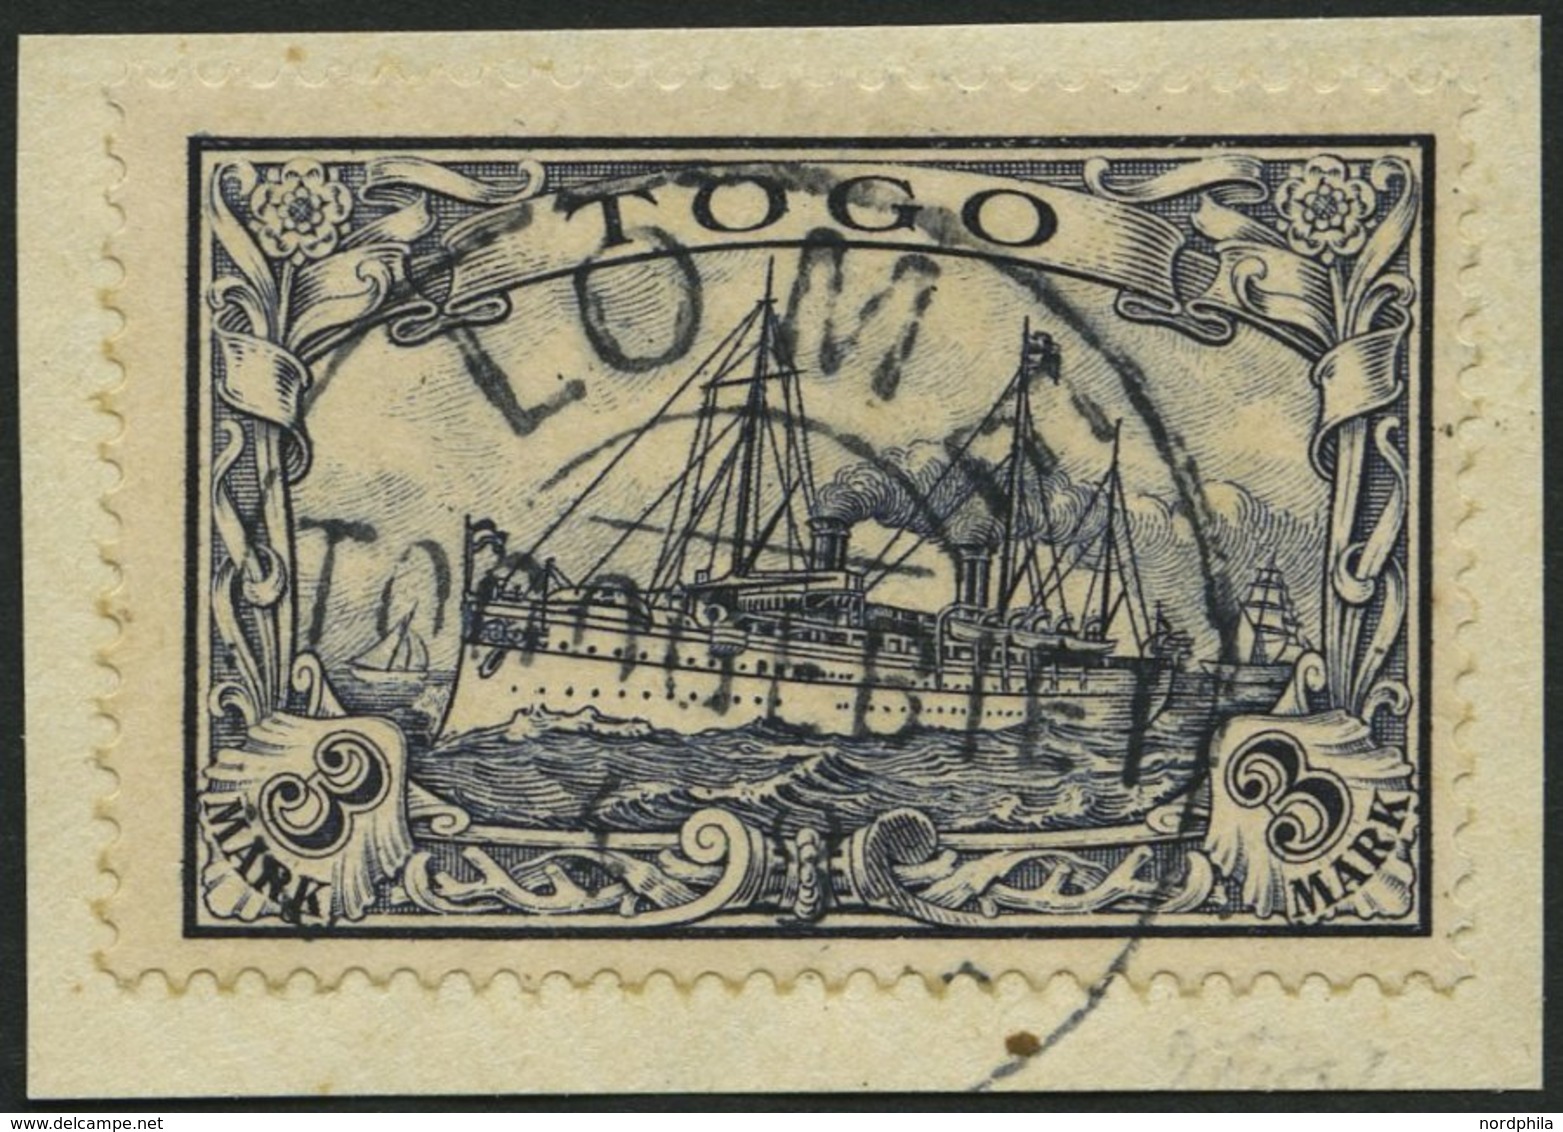 TOGO 18 BrfStk, 1900, 3 M. Violettschwarz, Prachtbriefstück, Mi. (180.-) - Togo